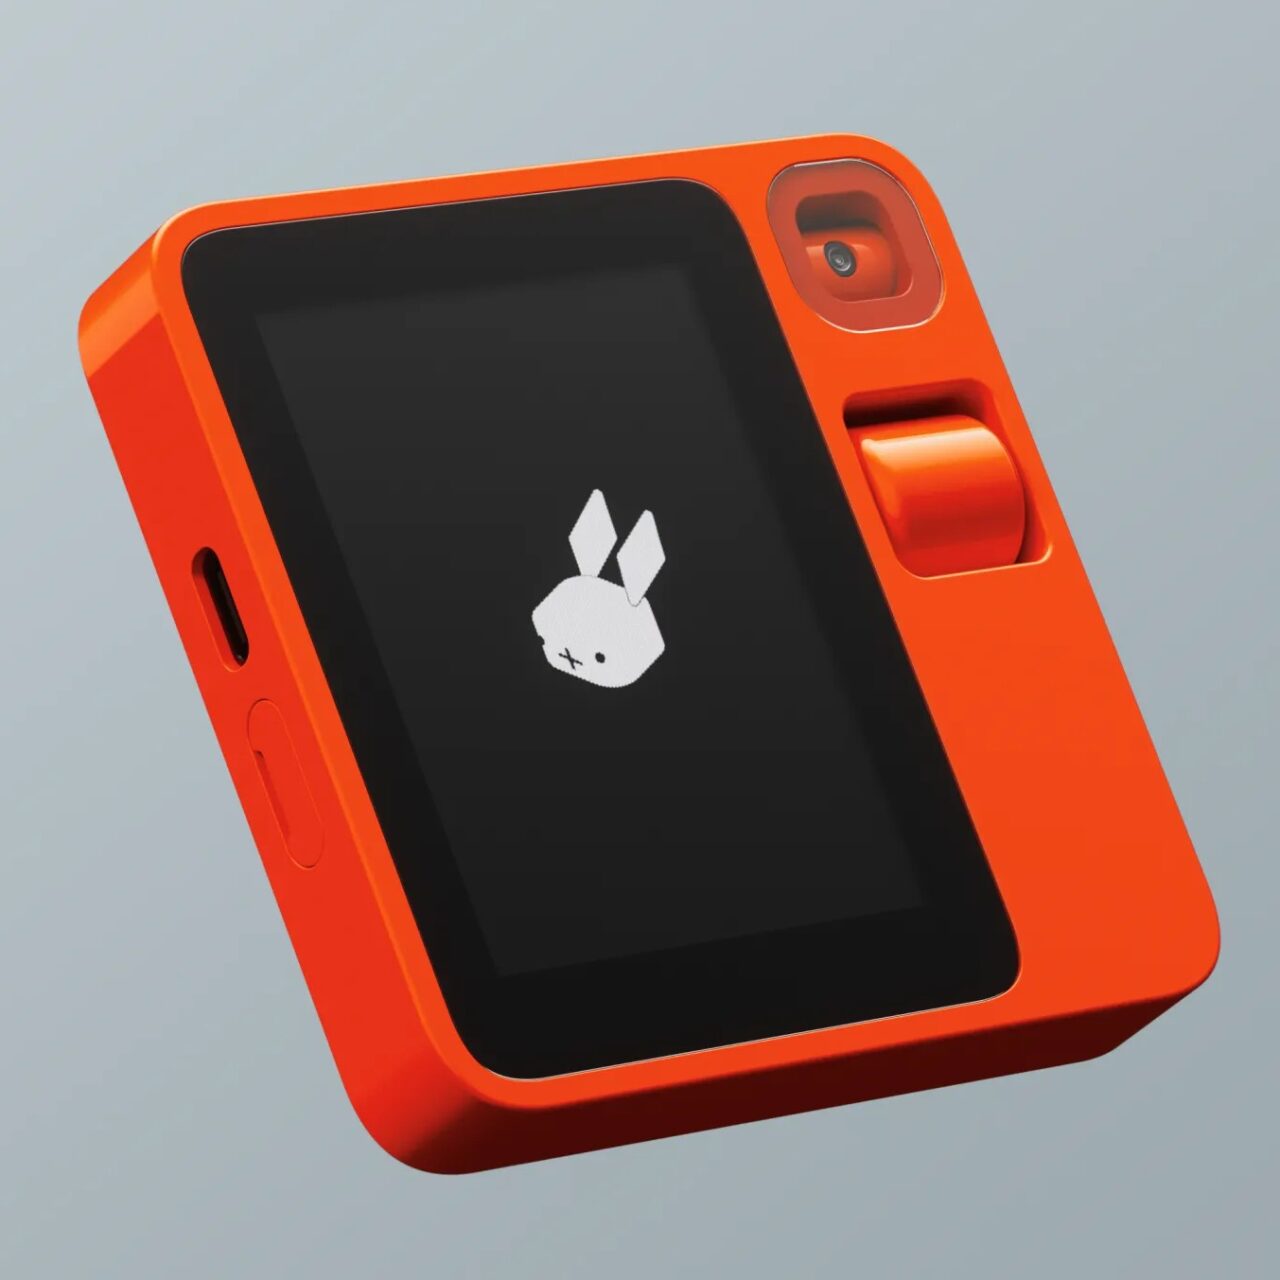 Pomarańczowy Rabbit R1 z wyświetlaczem pokazującym logo z białym króliczkiem na szarym tle i wbudowanym obiektywem aparatu.